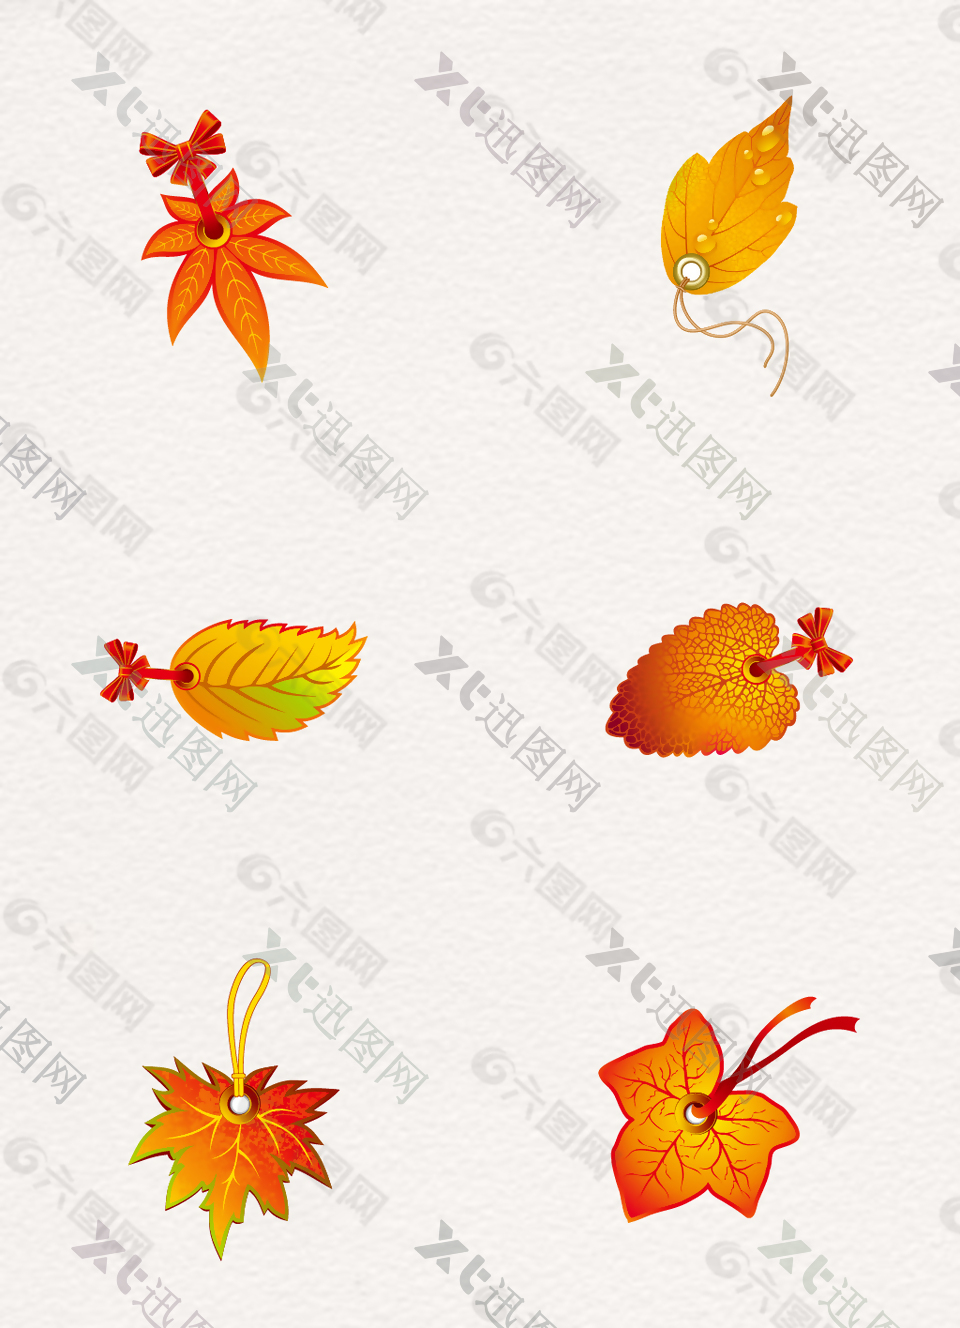 创意手绘秋季树叶吊牌设计